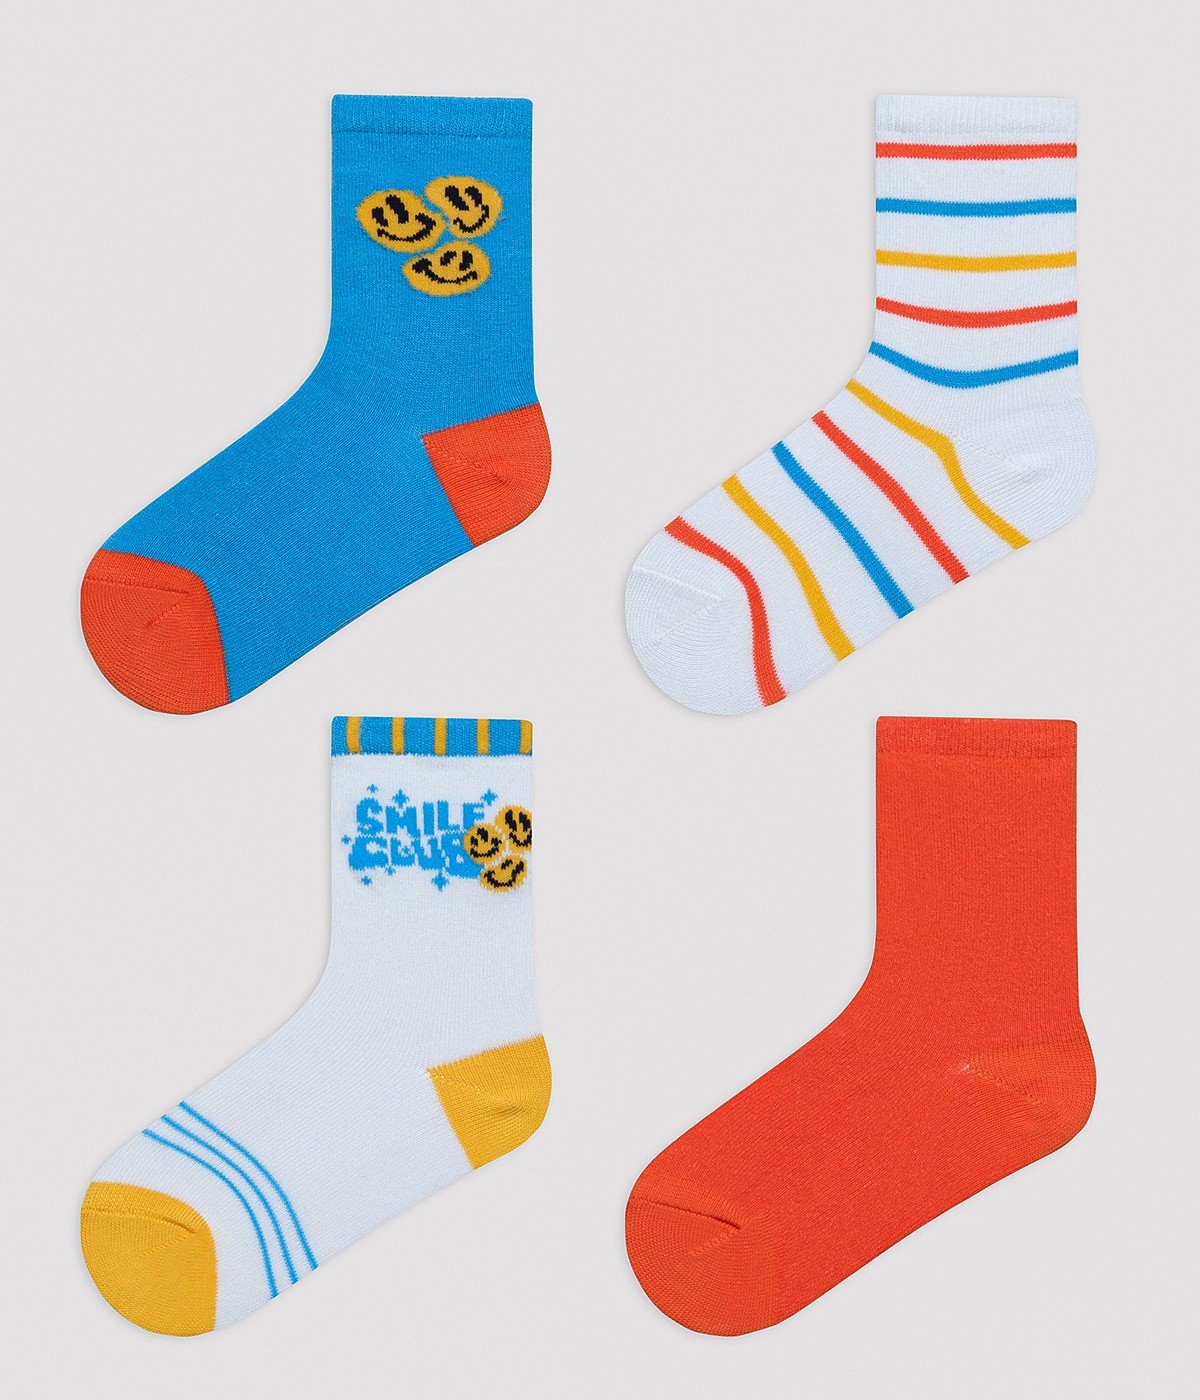 Boys Smile 4in1 Socket Socks